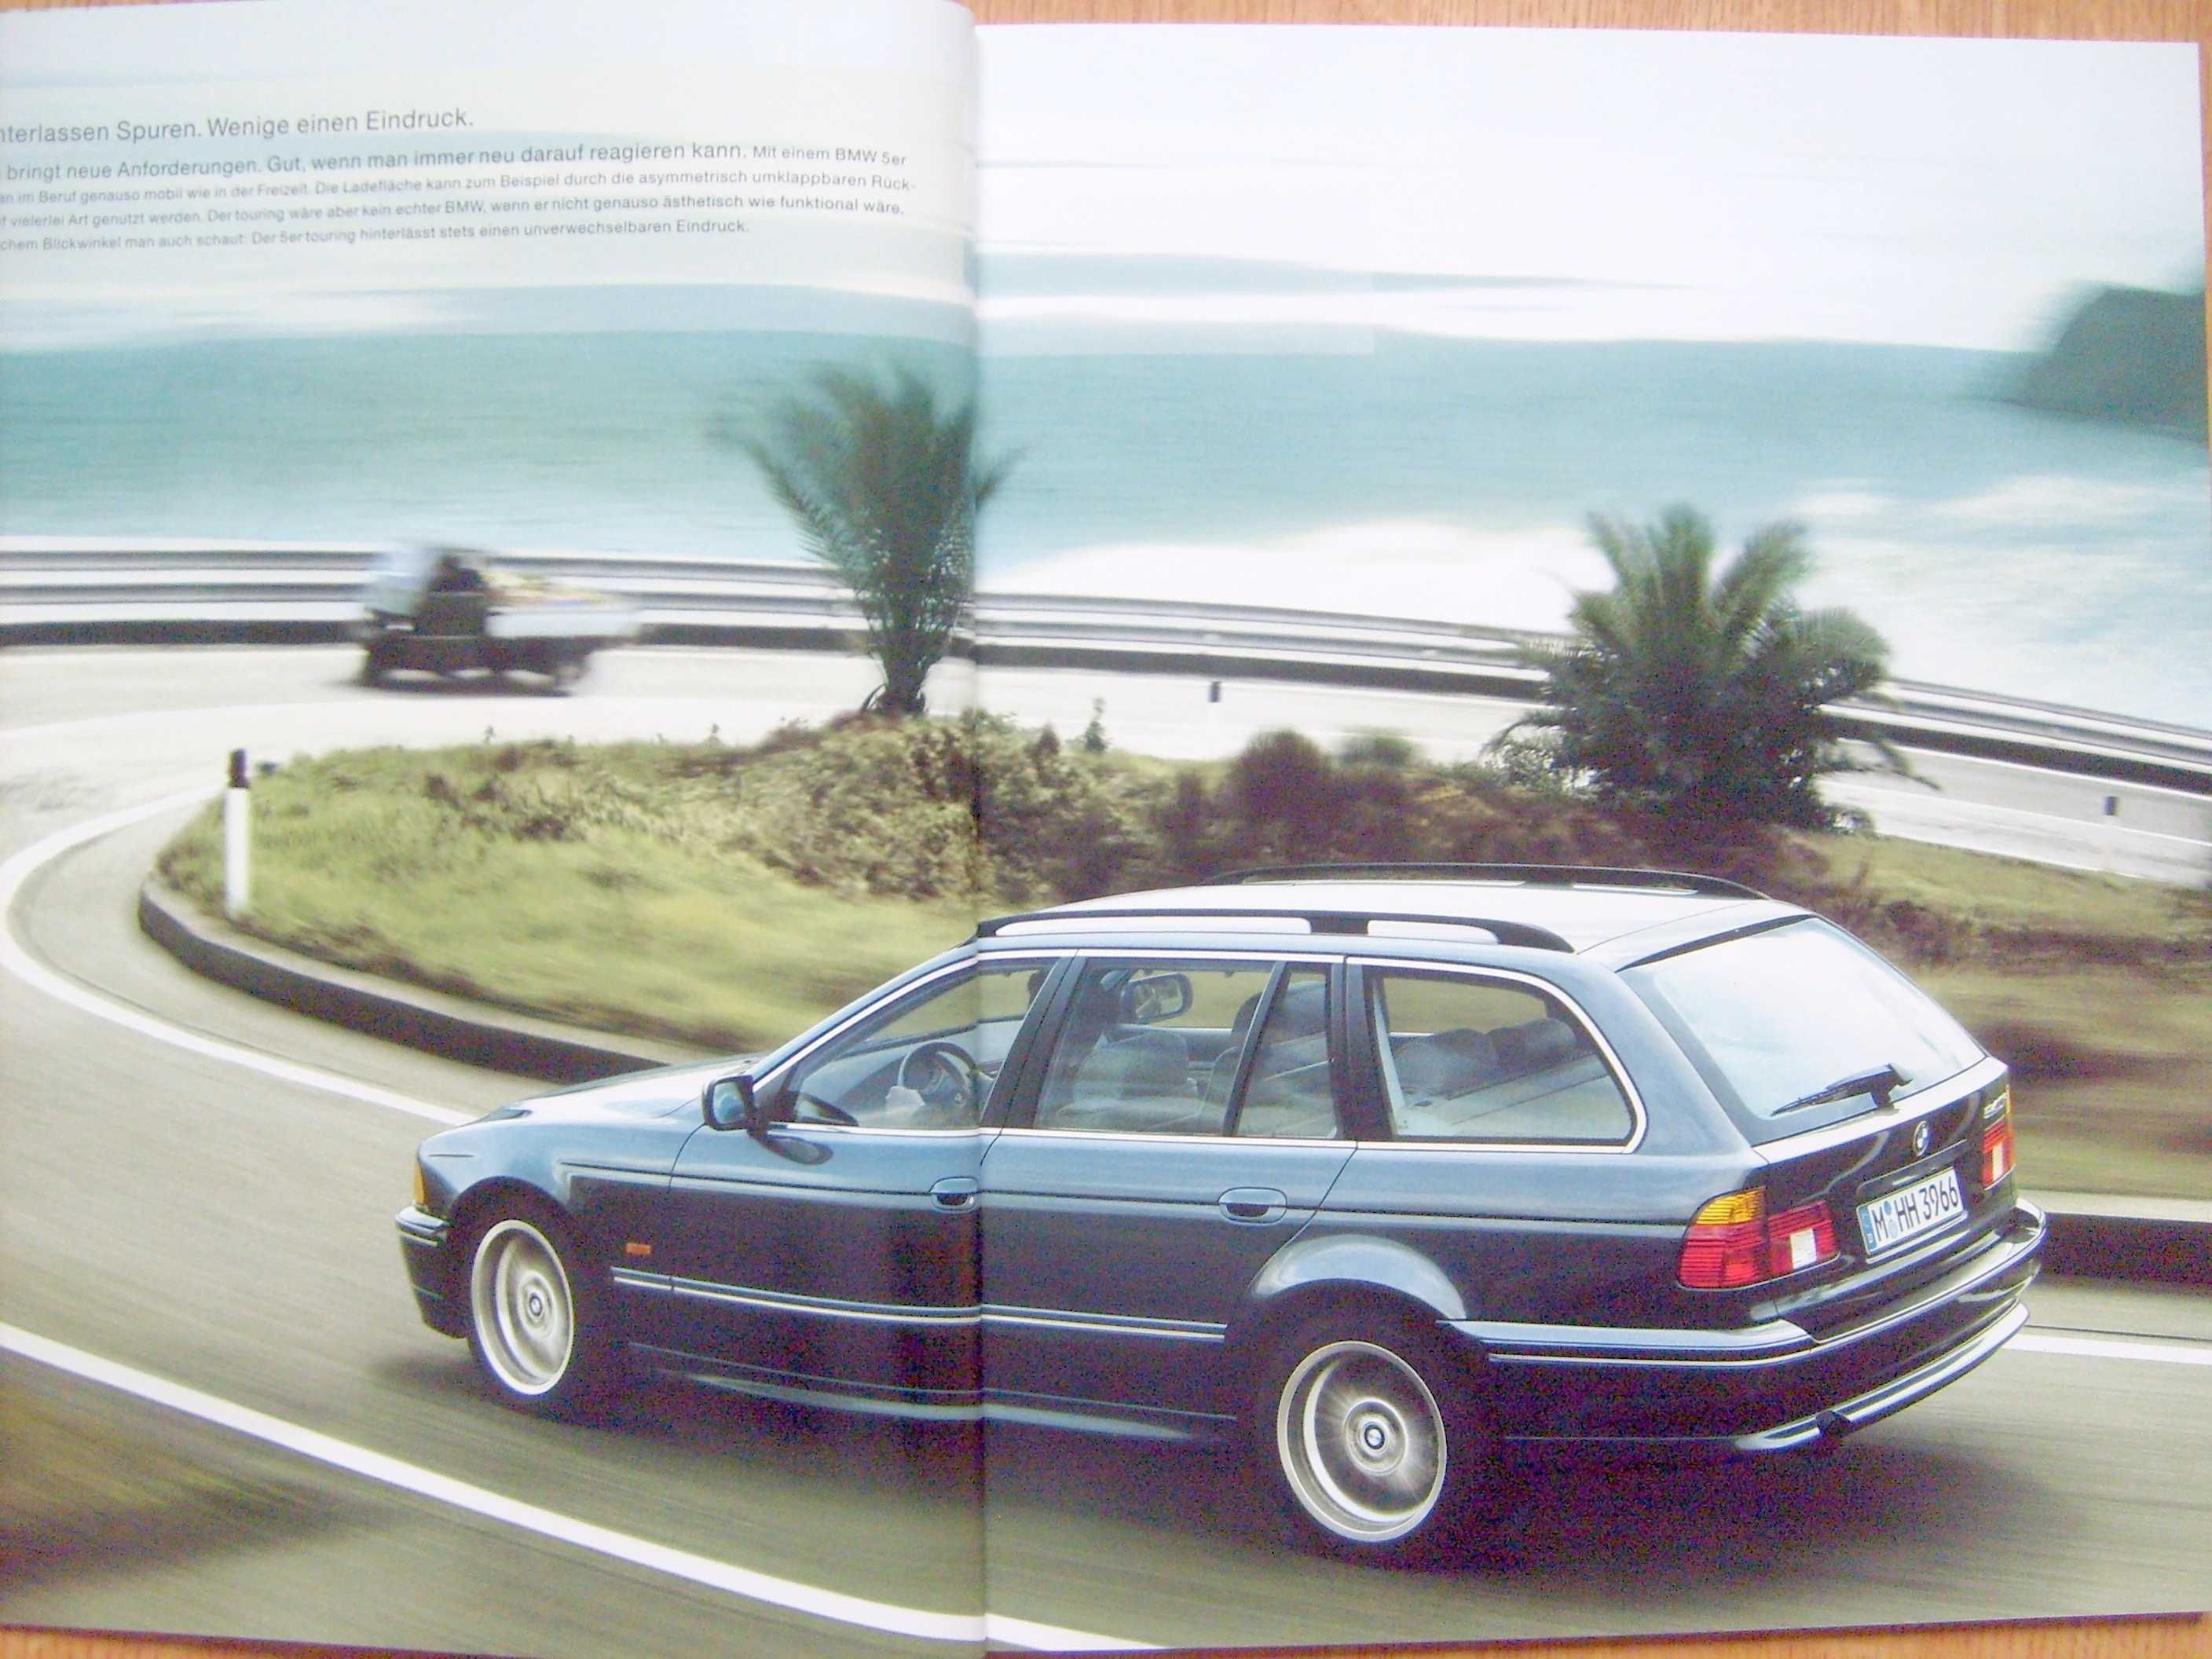 BMW seria 5 E39 Touring 2000 / prospekt 90 stron ! Wyprzedaż zbiorów !